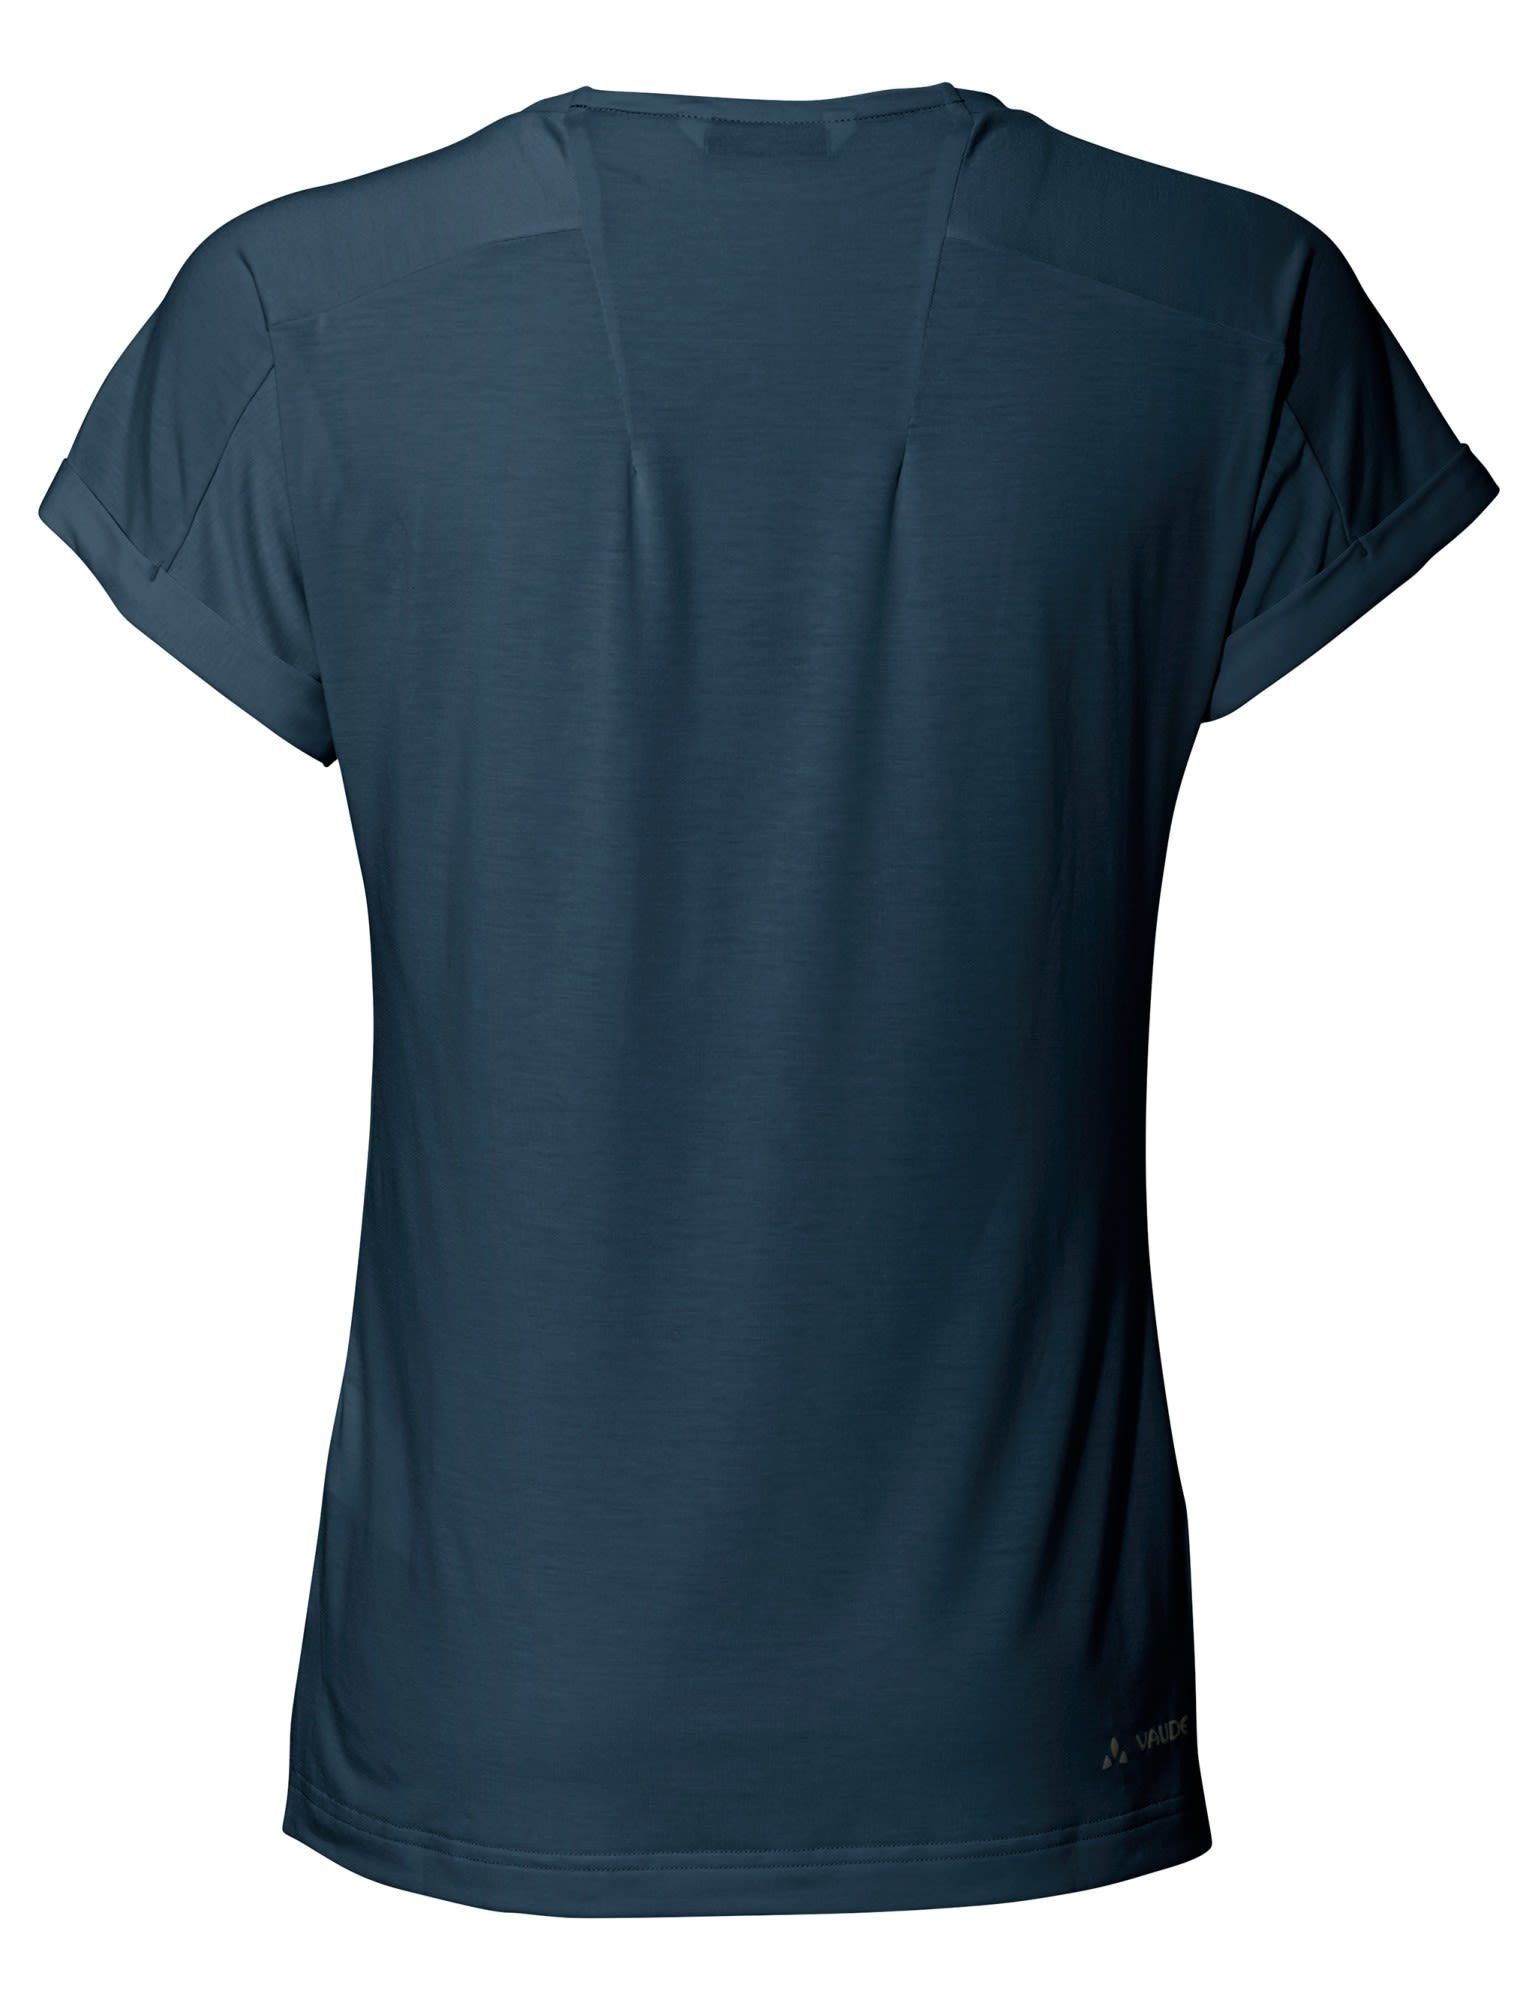 Vaude Sea T-shirt Dark Cyclist Damen 2 VAUDE Womens Kurzarm-Shirt T-Shirt